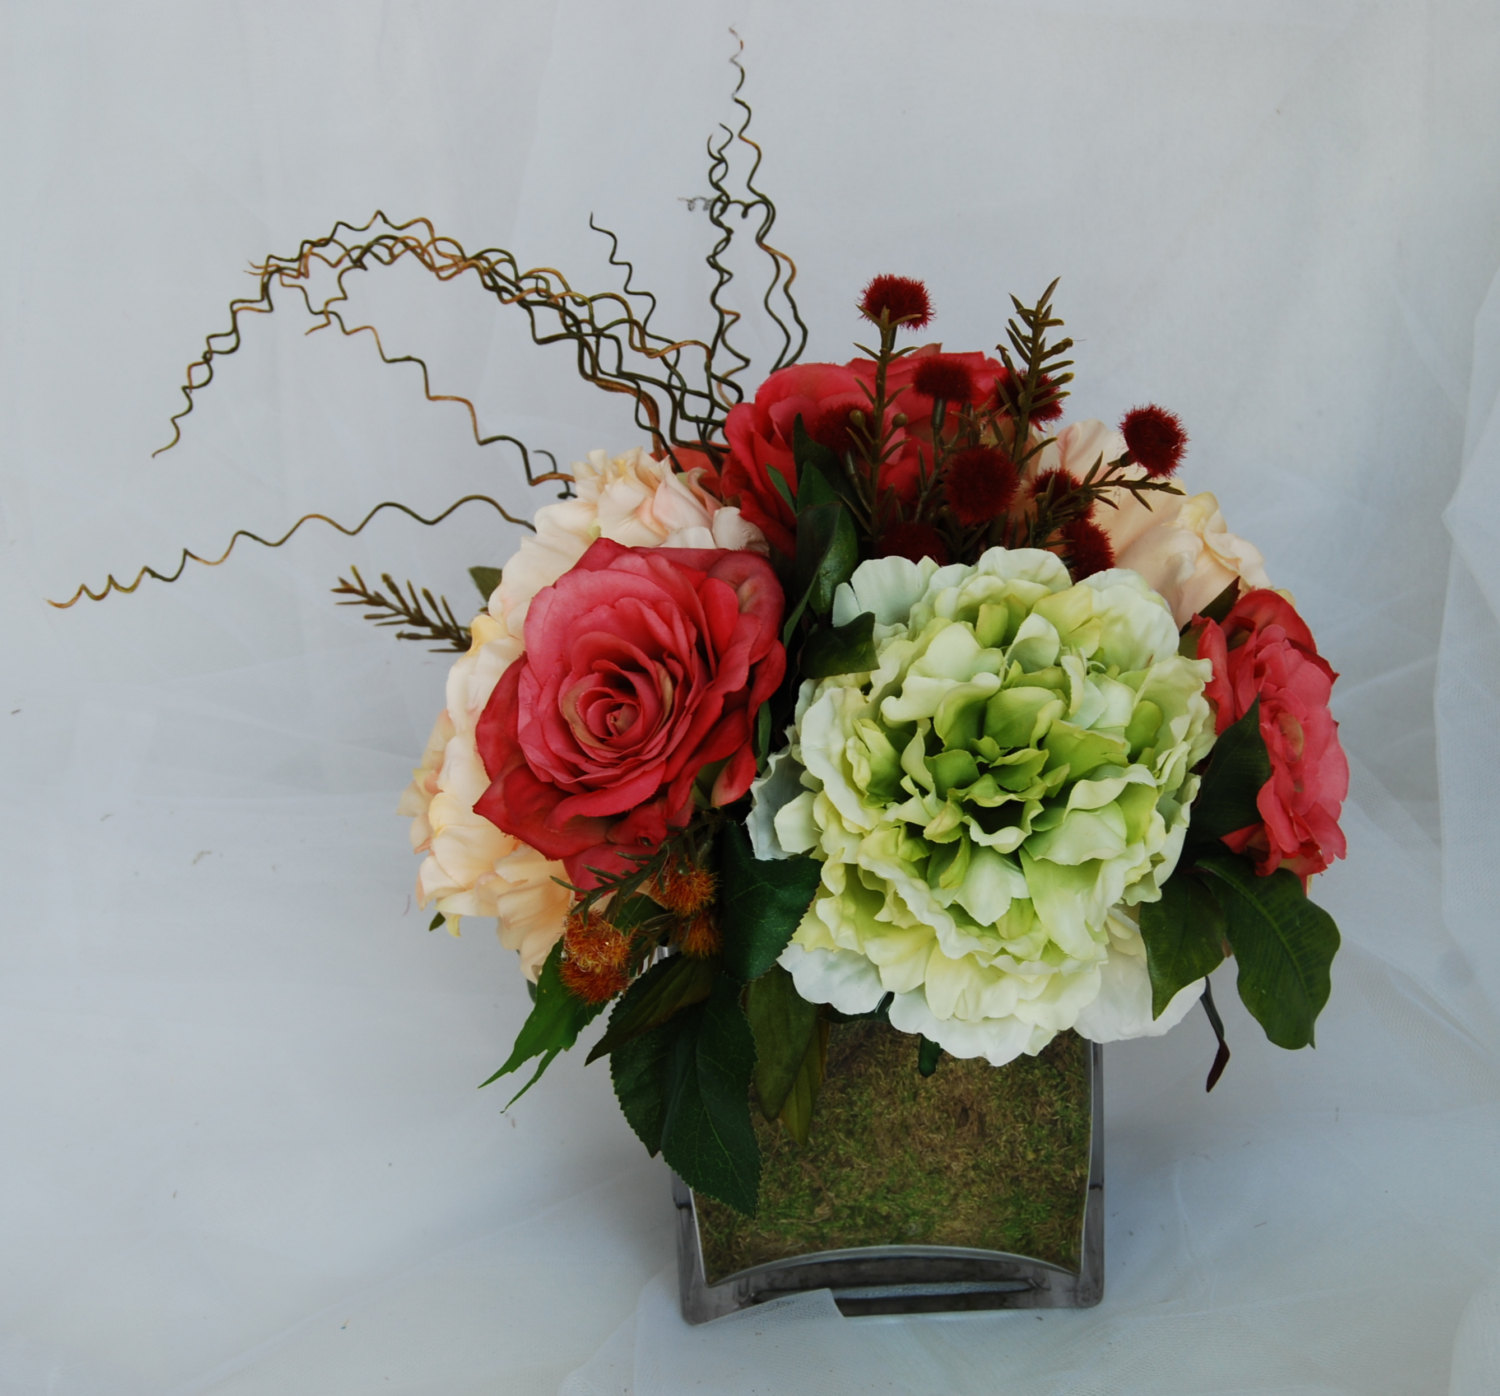 Details about   CORAL 10" SILK FLOWERS Artificial Peony Bouquet Arrangement Wedding Centerpieces 